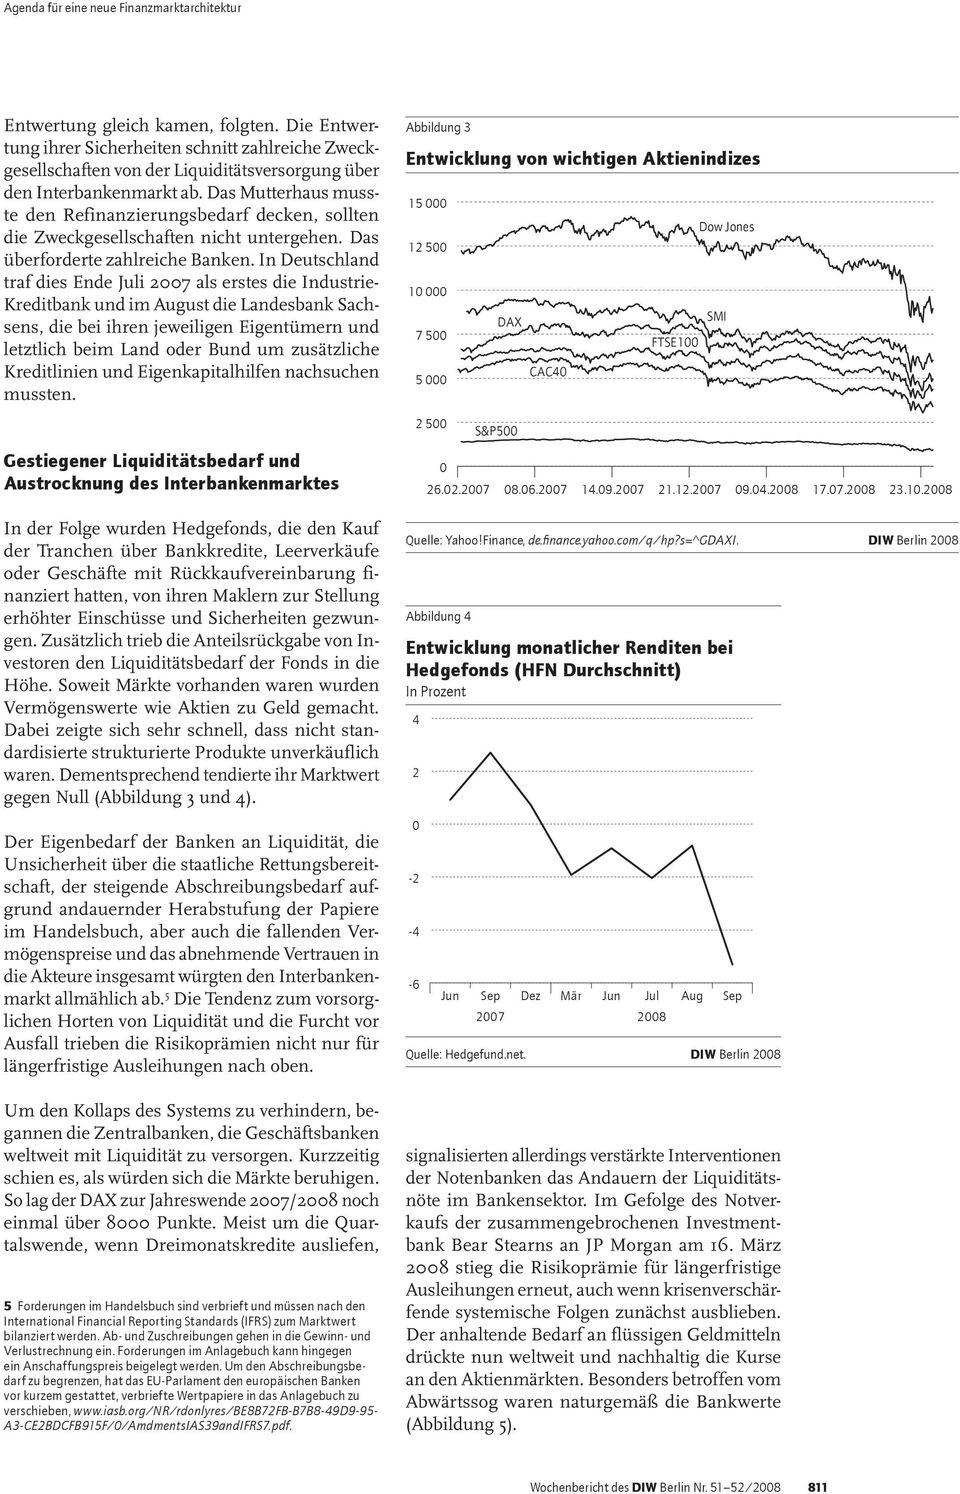 In Deutschland traf dies Ende Juli 27 als erstes die Industrie- Kreditbank und im August die Landesbank Sachsens, die bei ihren jeweiligen Eigentümern und letztlich beim Land oder Bund um zusätzliche